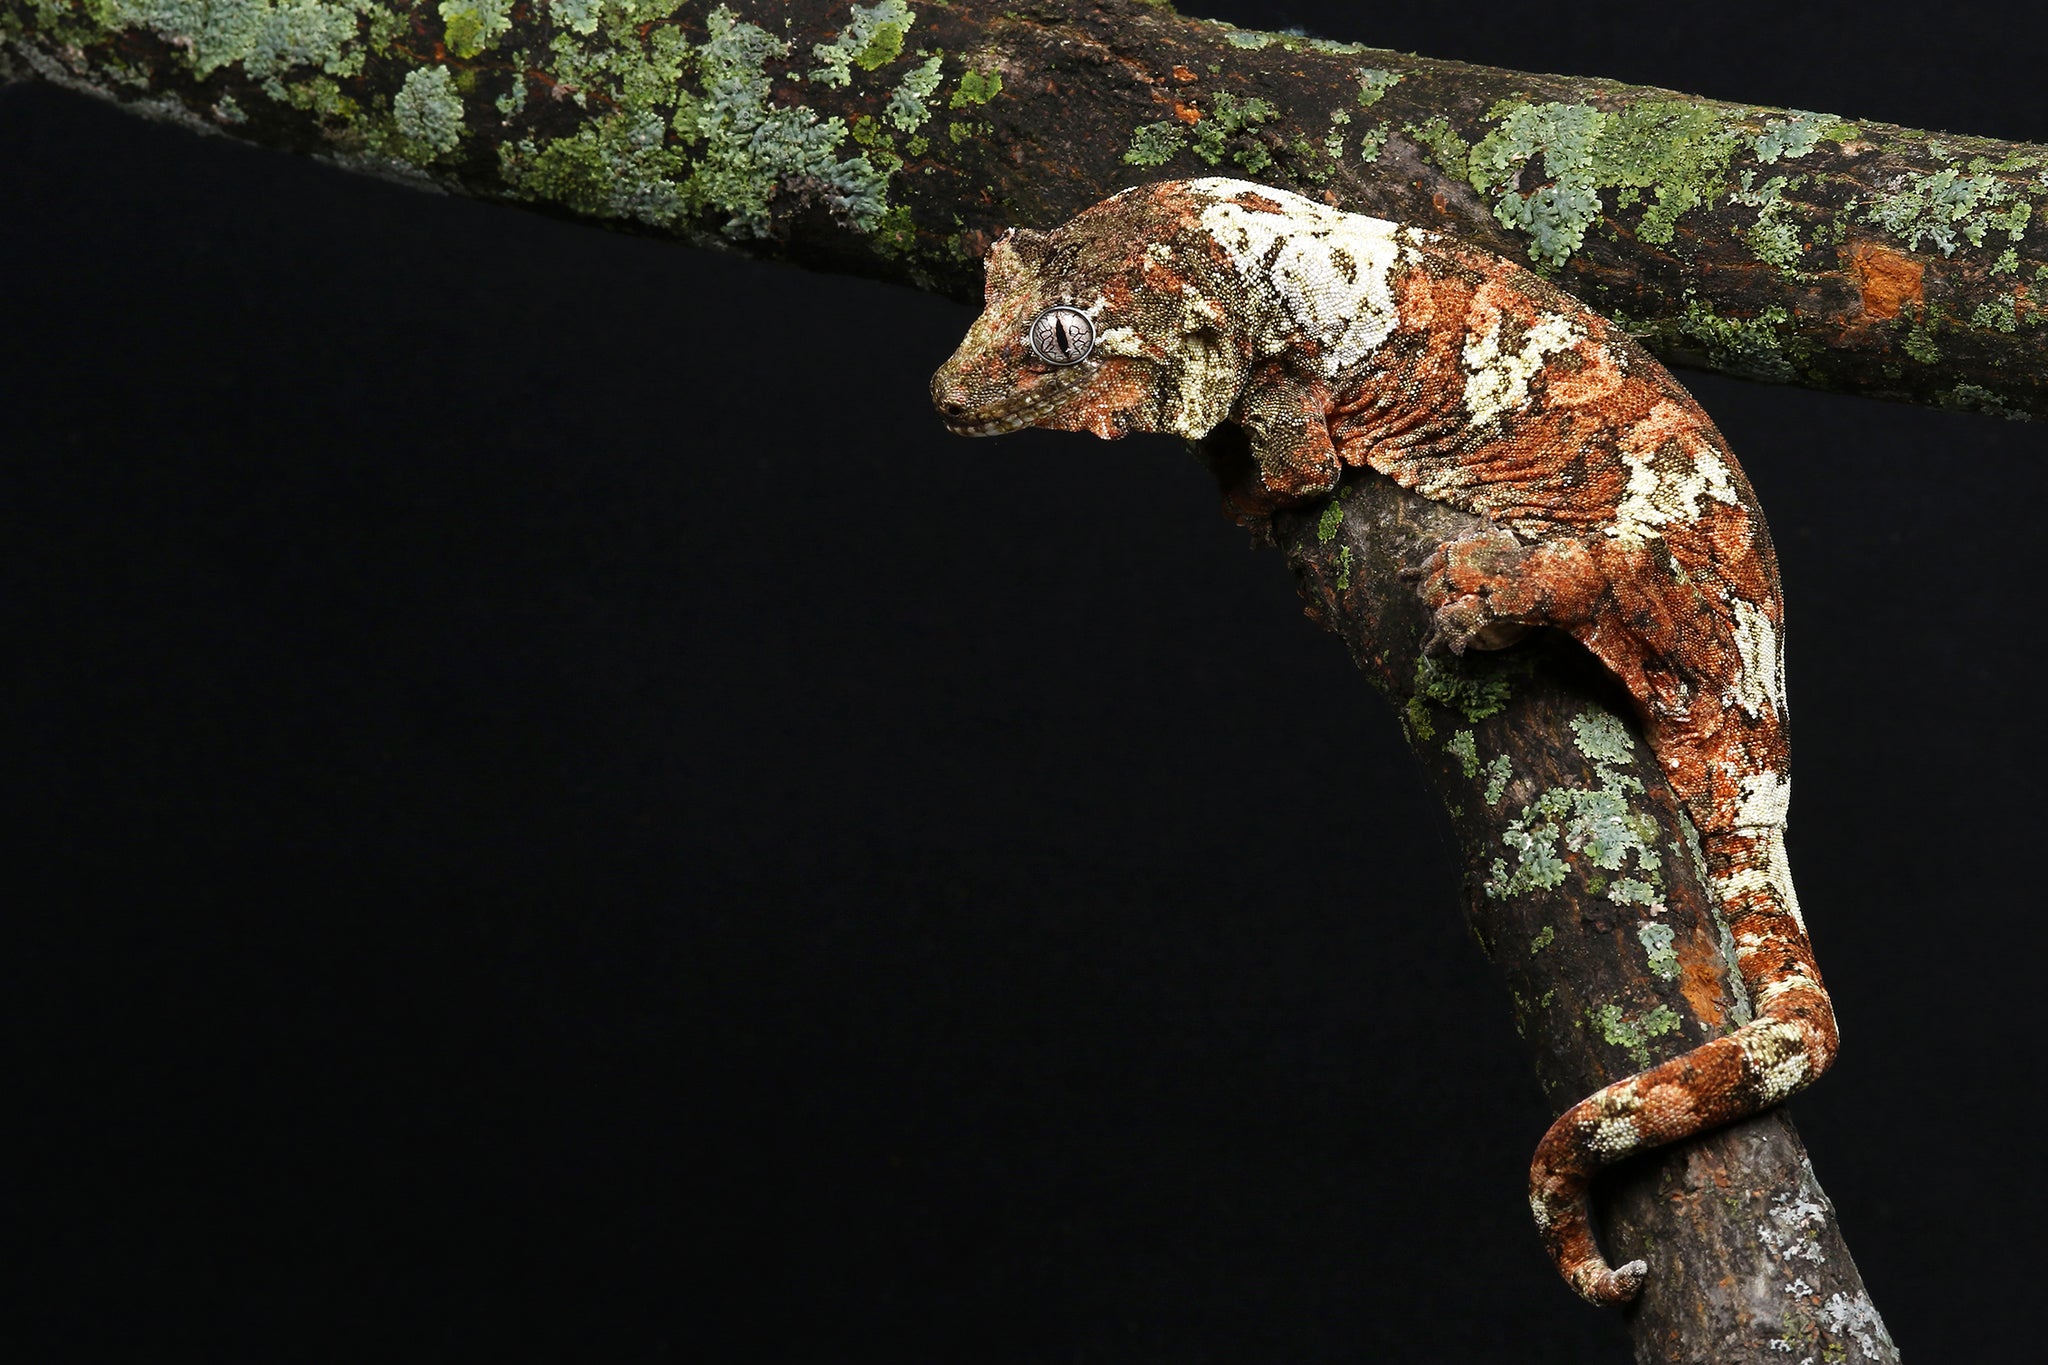 Mossy Prehensile-Tailed Gecko (Mniarogekko chahoua)